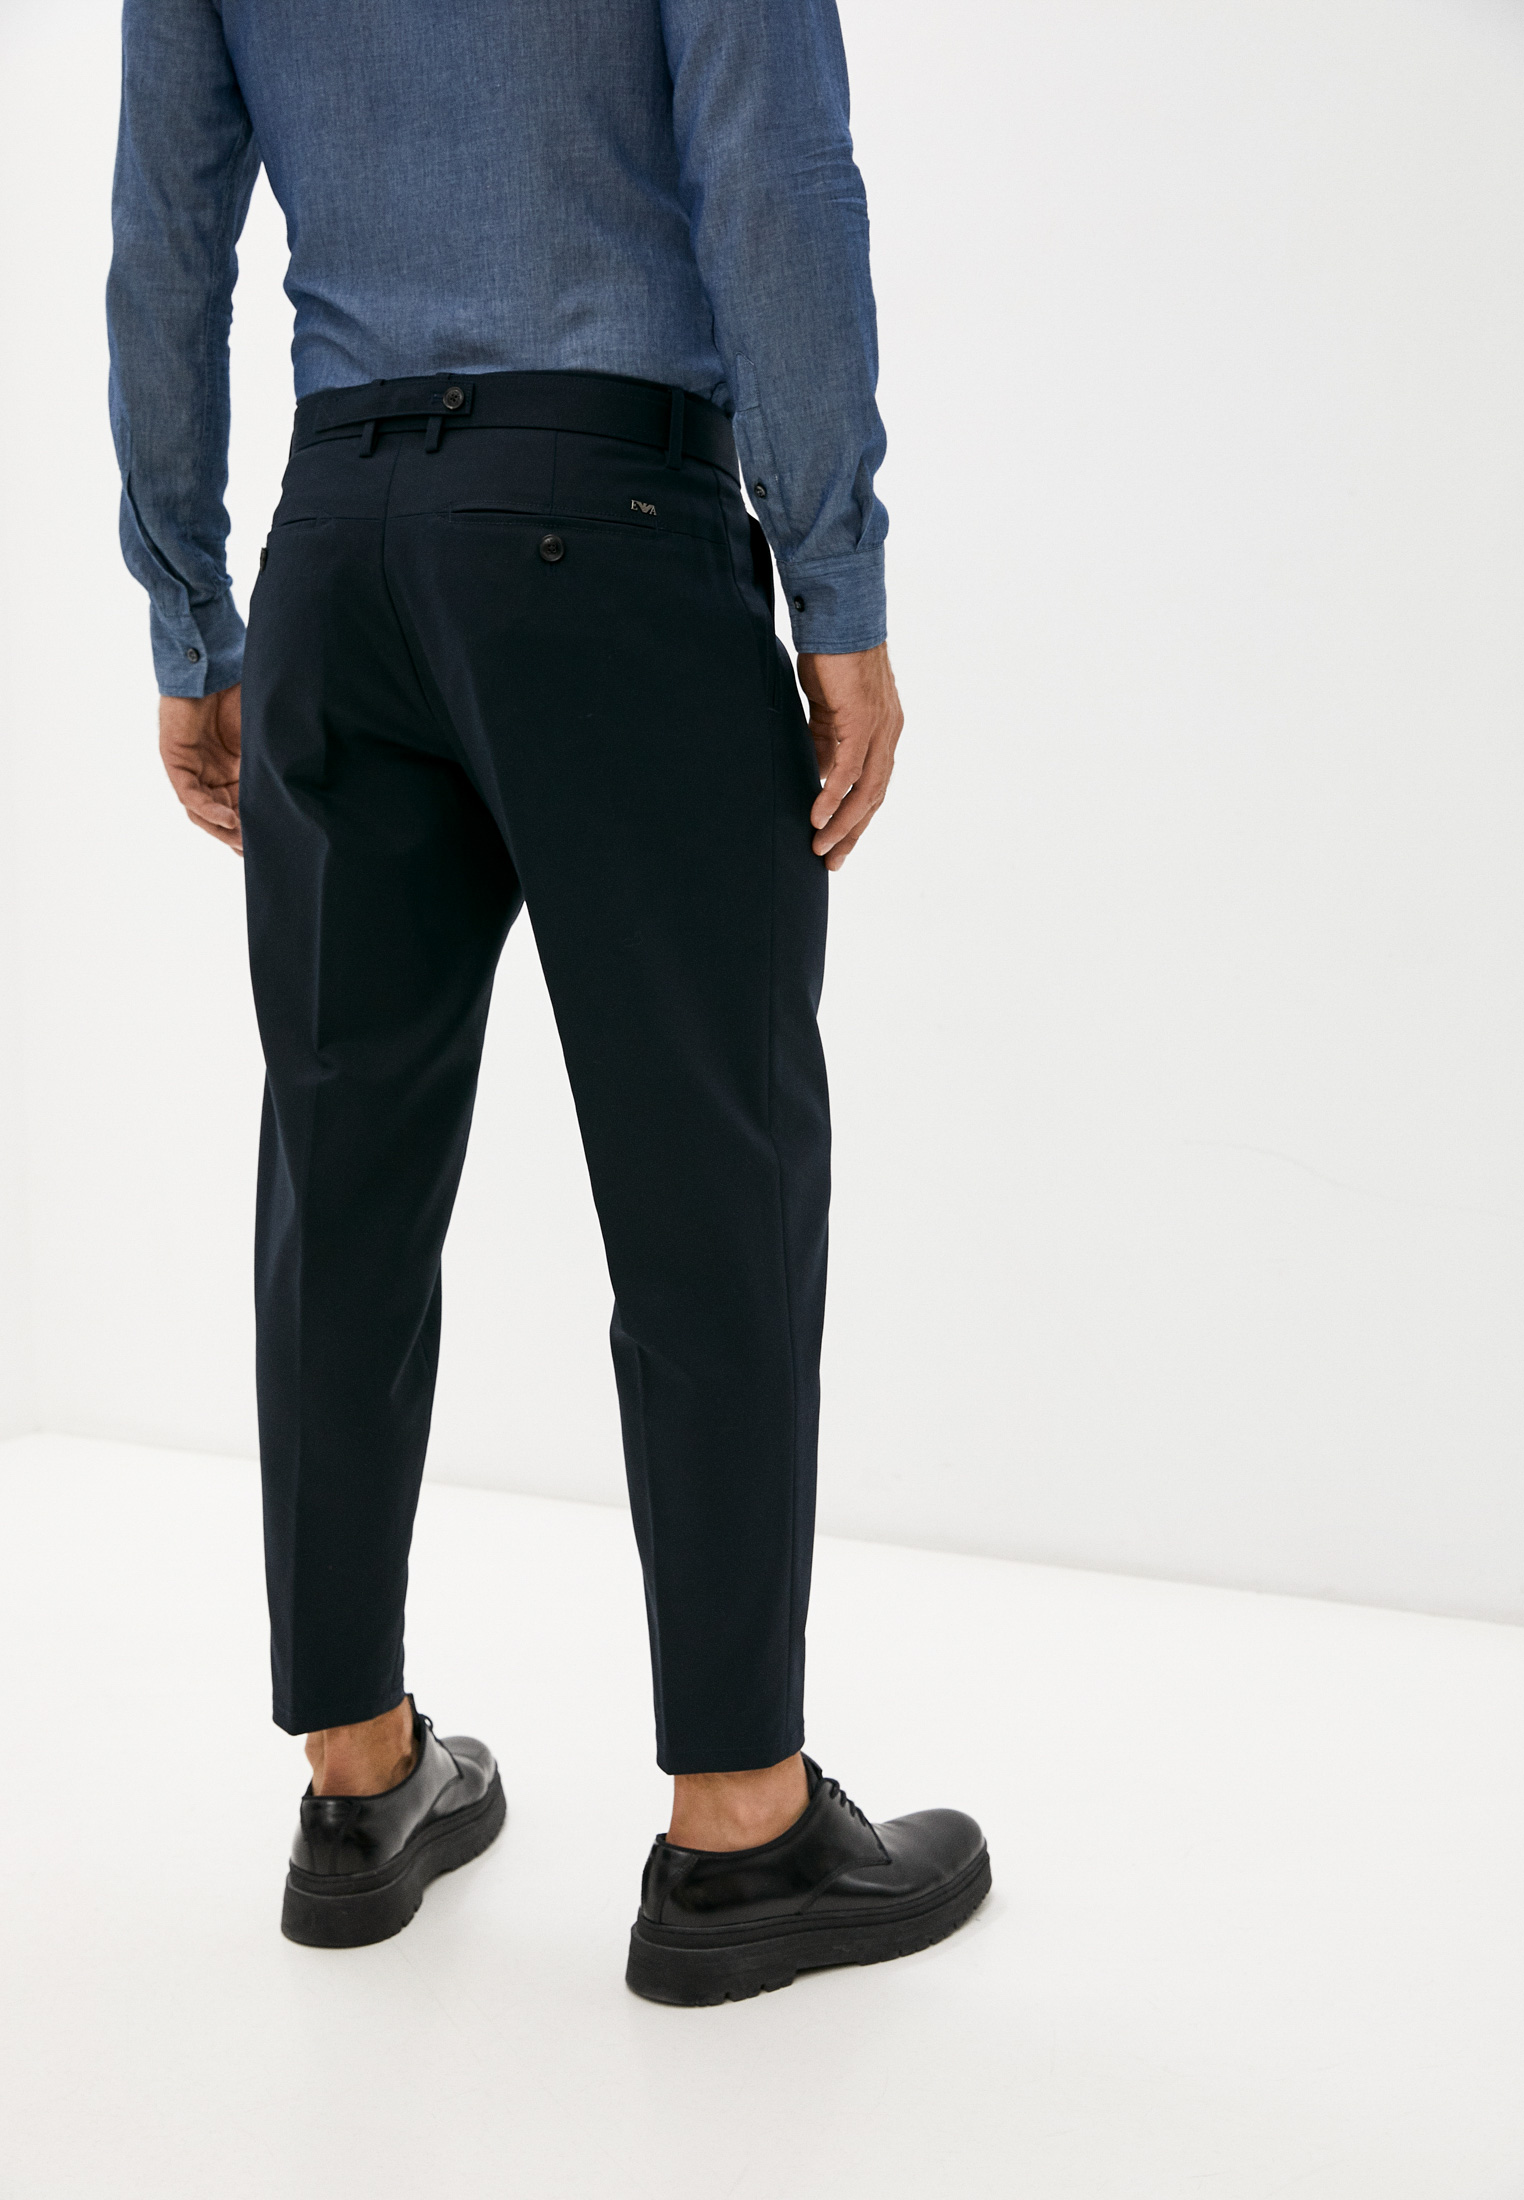 Мужские повседневные брюки Emporio Armani (Эмпорио Армани) 3Z1PL0 1NFVZ: изображение 4